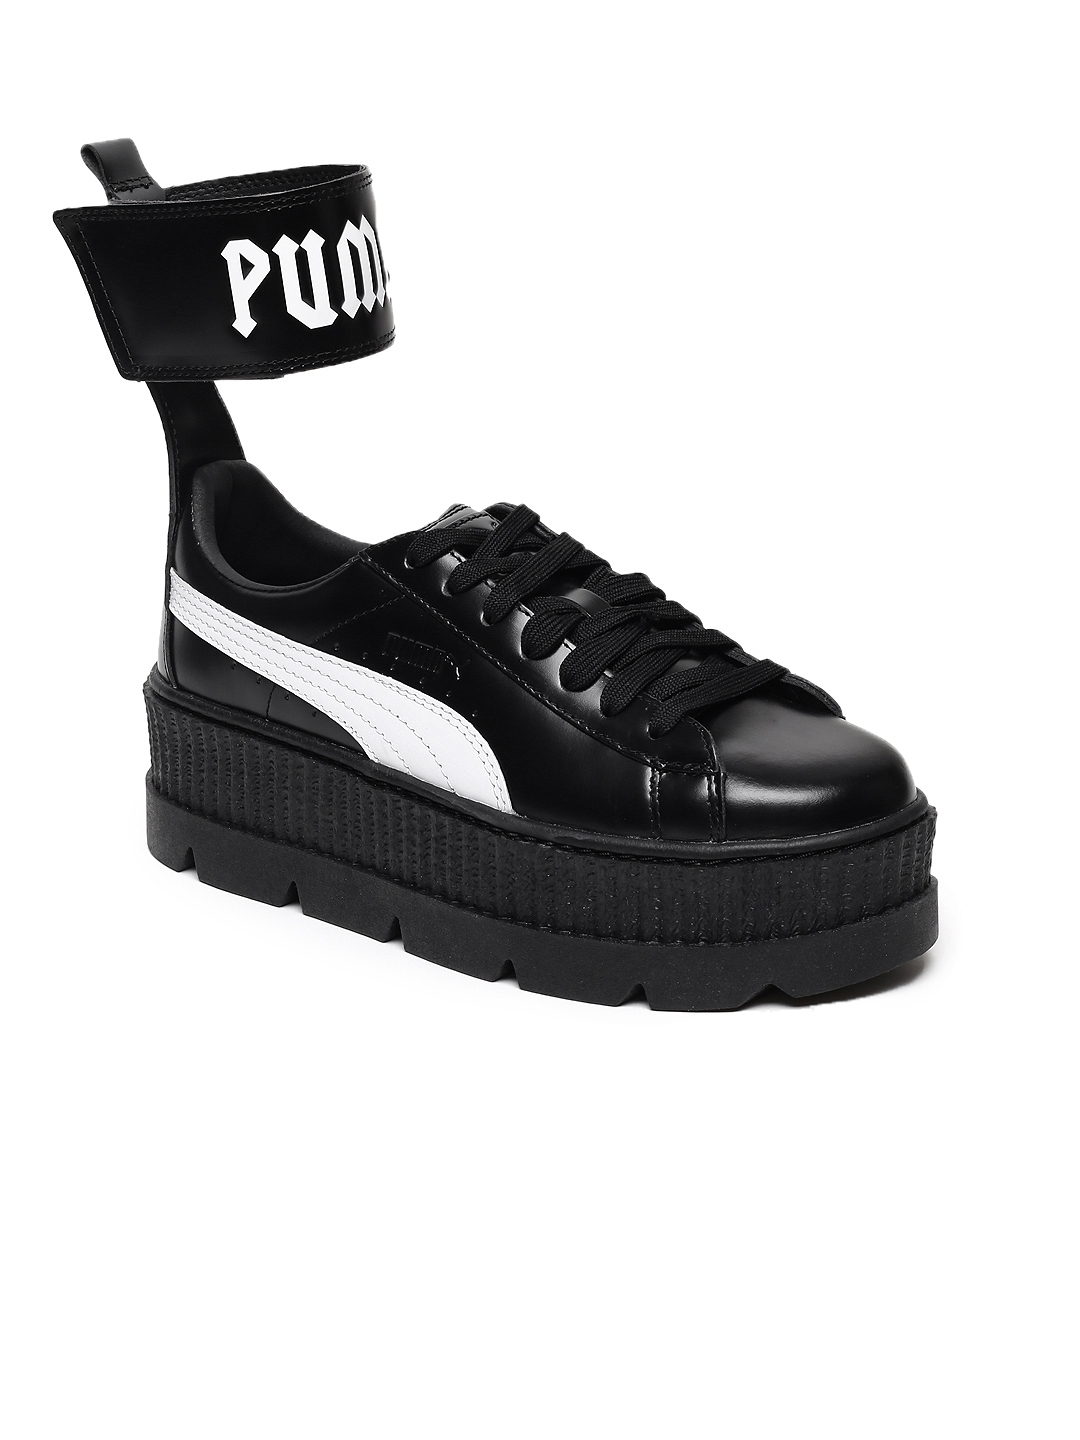 puma high sneaker